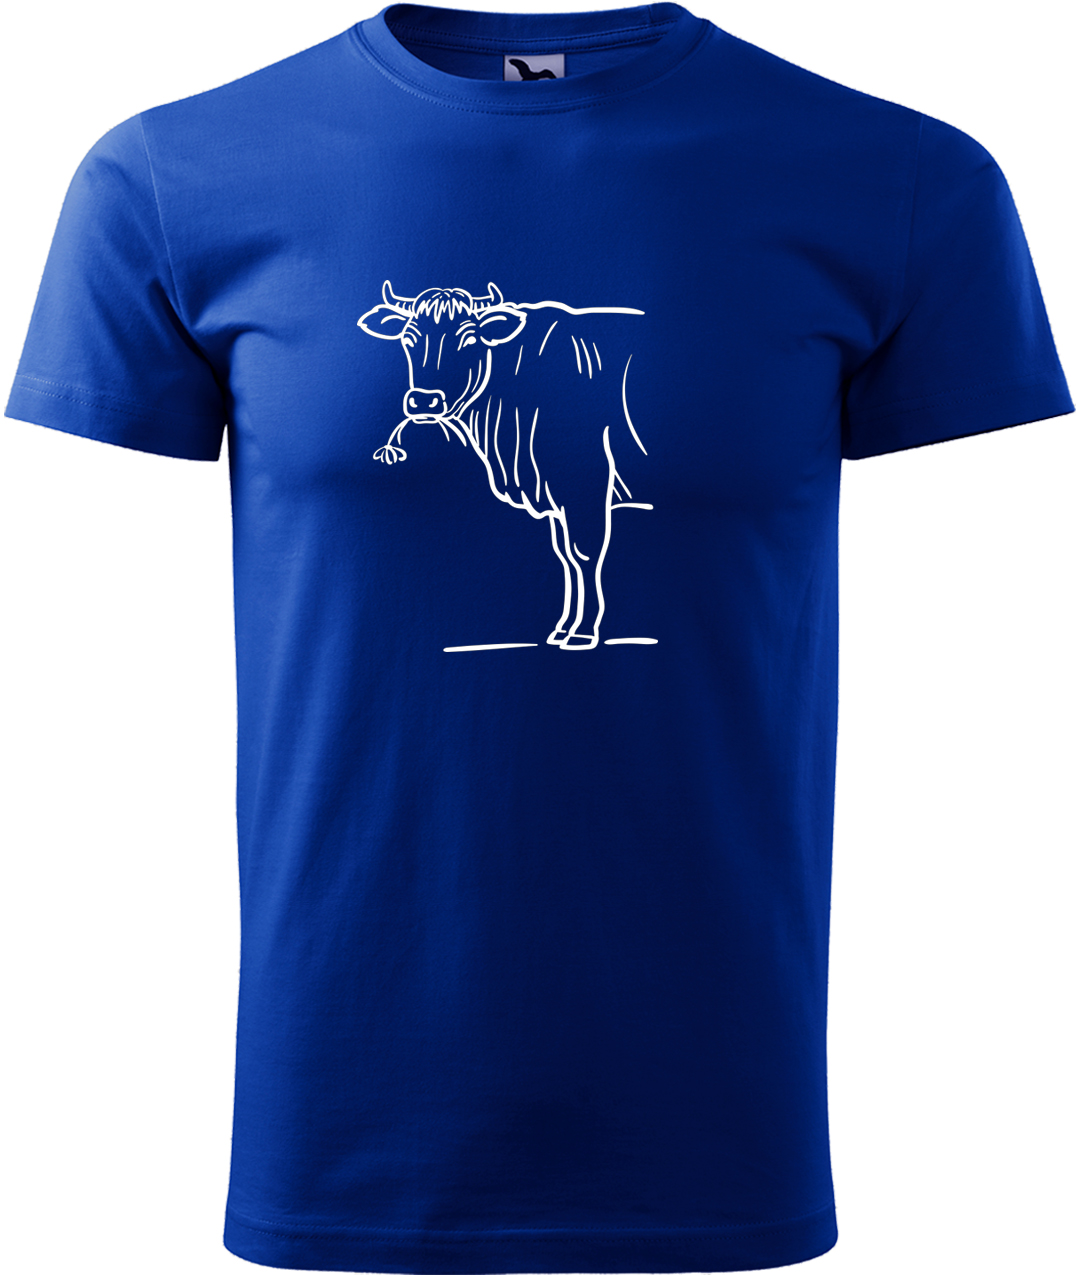 Pánské tričko s krávou - Býk Velikost: XL, Barva: Královská modrá (05), Střih: pánský